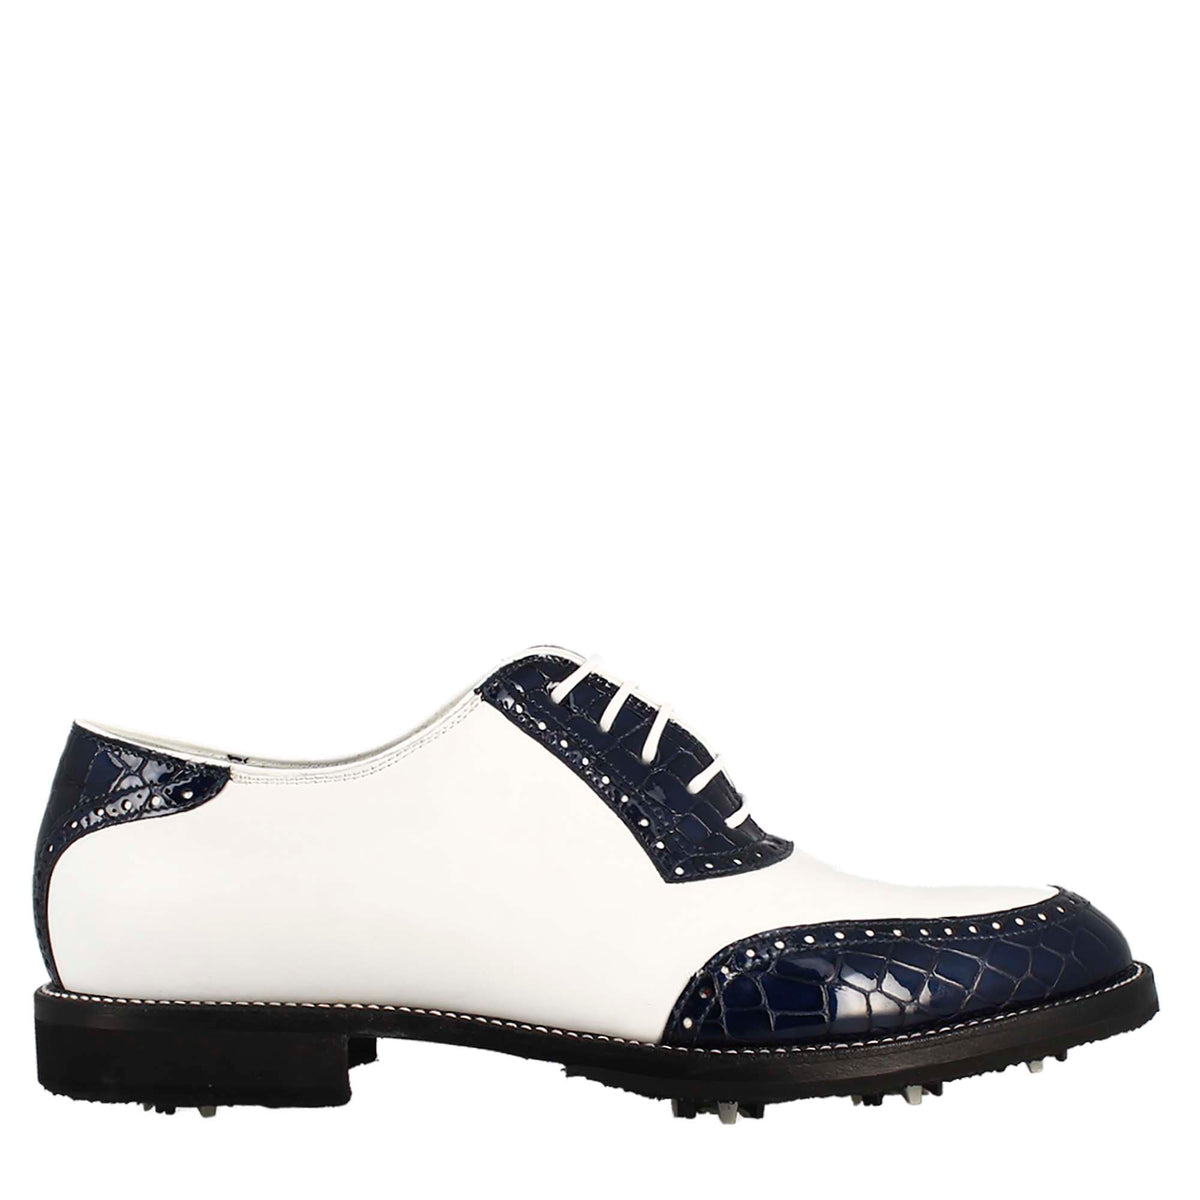 Scarpe golf da uomo artigianali in pelle bianco e cocco blu